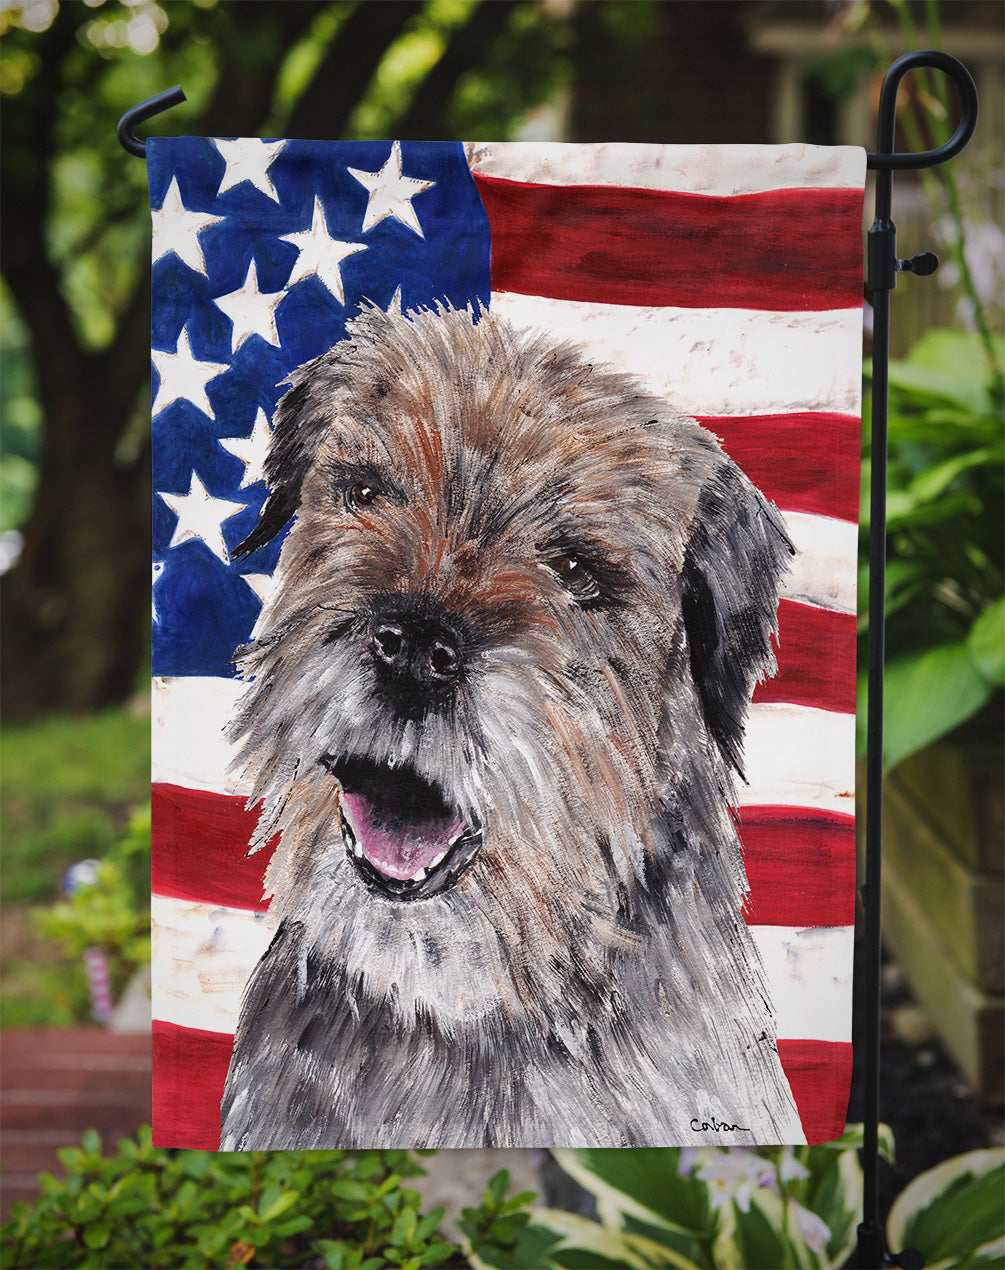 Border Terrier Mix USA American Flag Flag Garden Size.